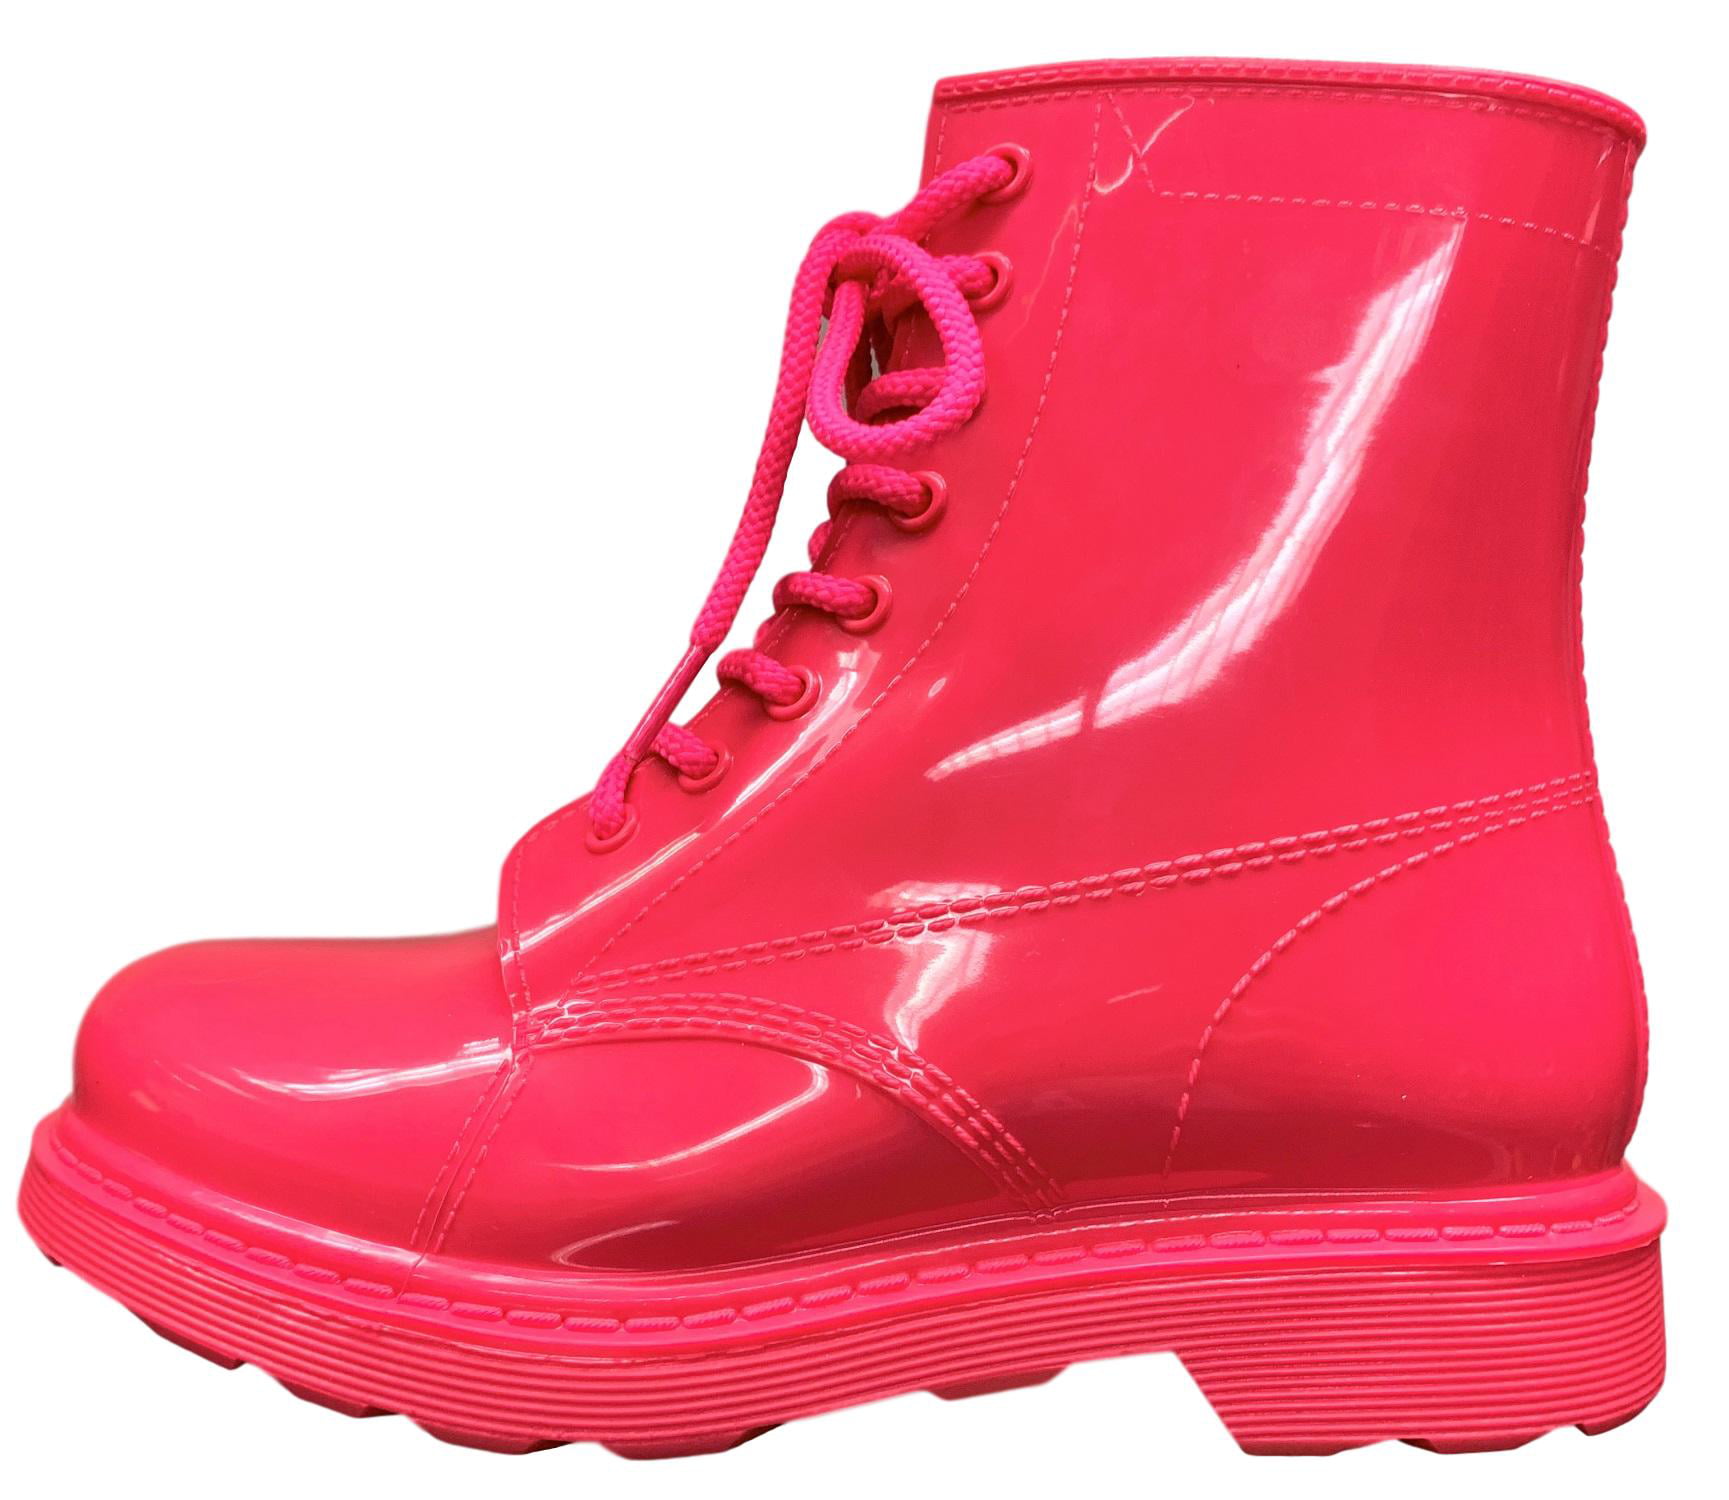 neon pink combat boots